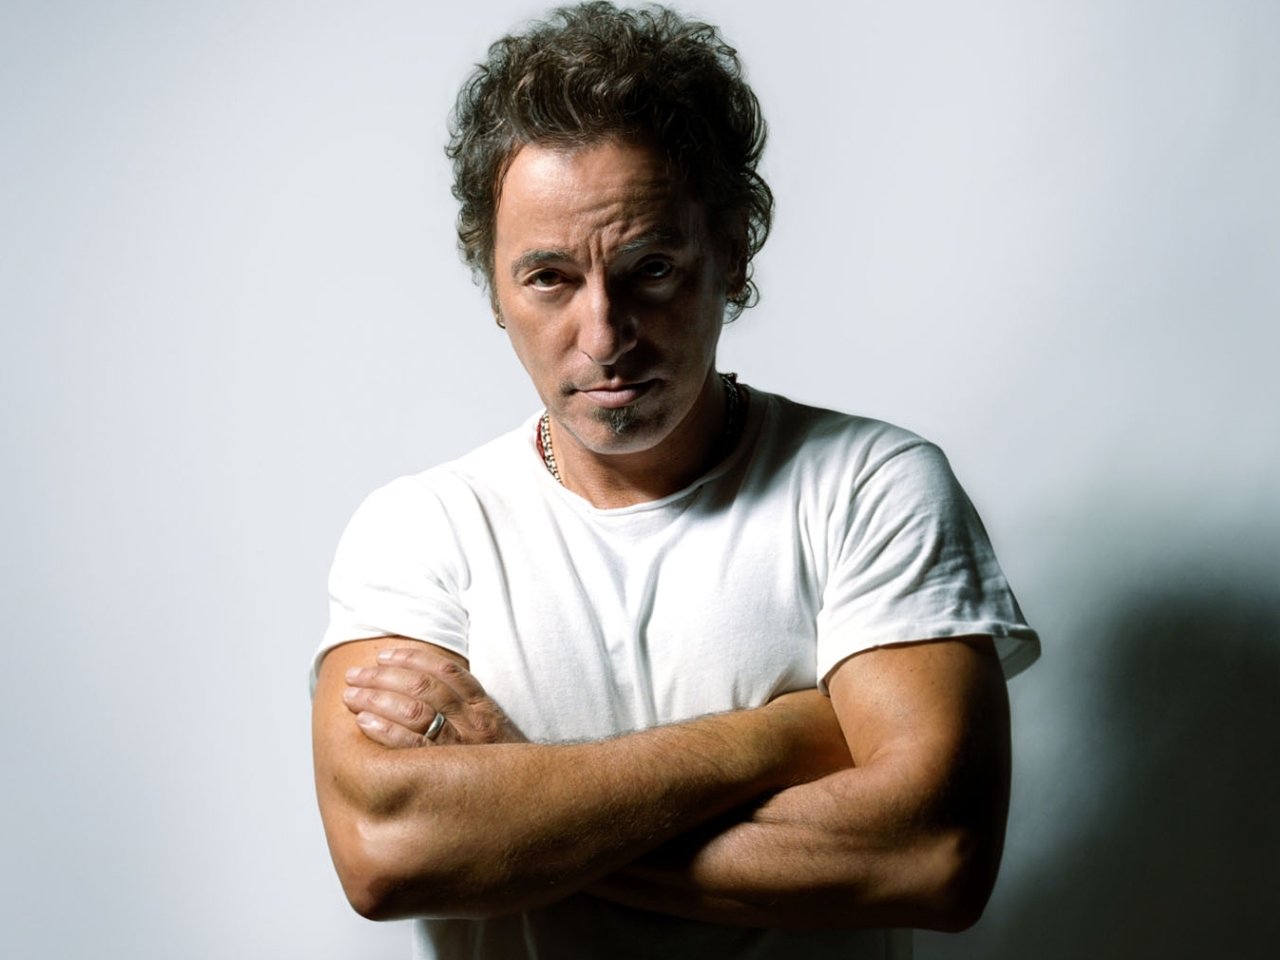 布魯斯·斯普林斯汀(Bruce Springsteen)